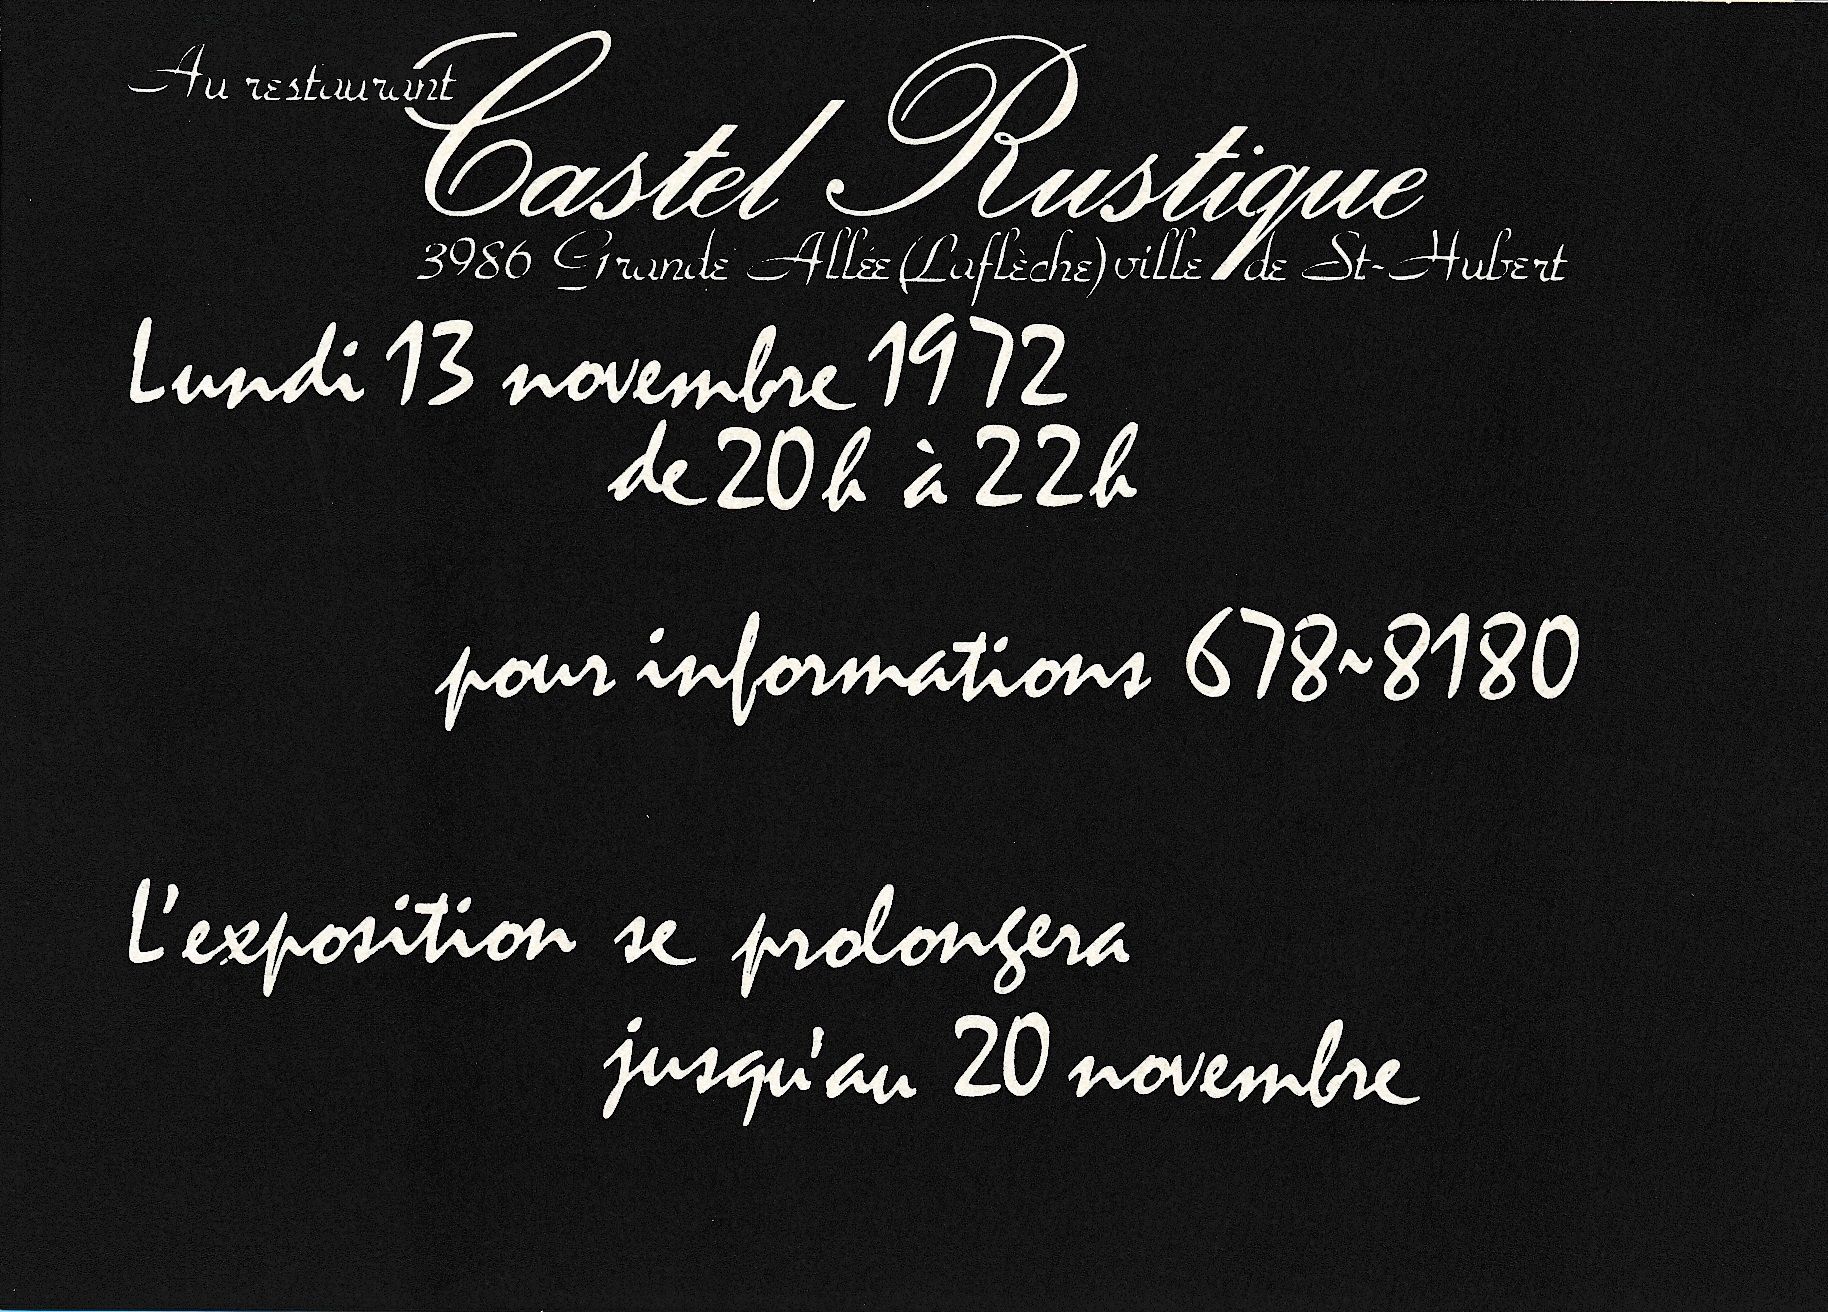 Carton d’invitation de l’exposition Louise Robert, Restaurant Castel Rustique, Longueuil, 1972.